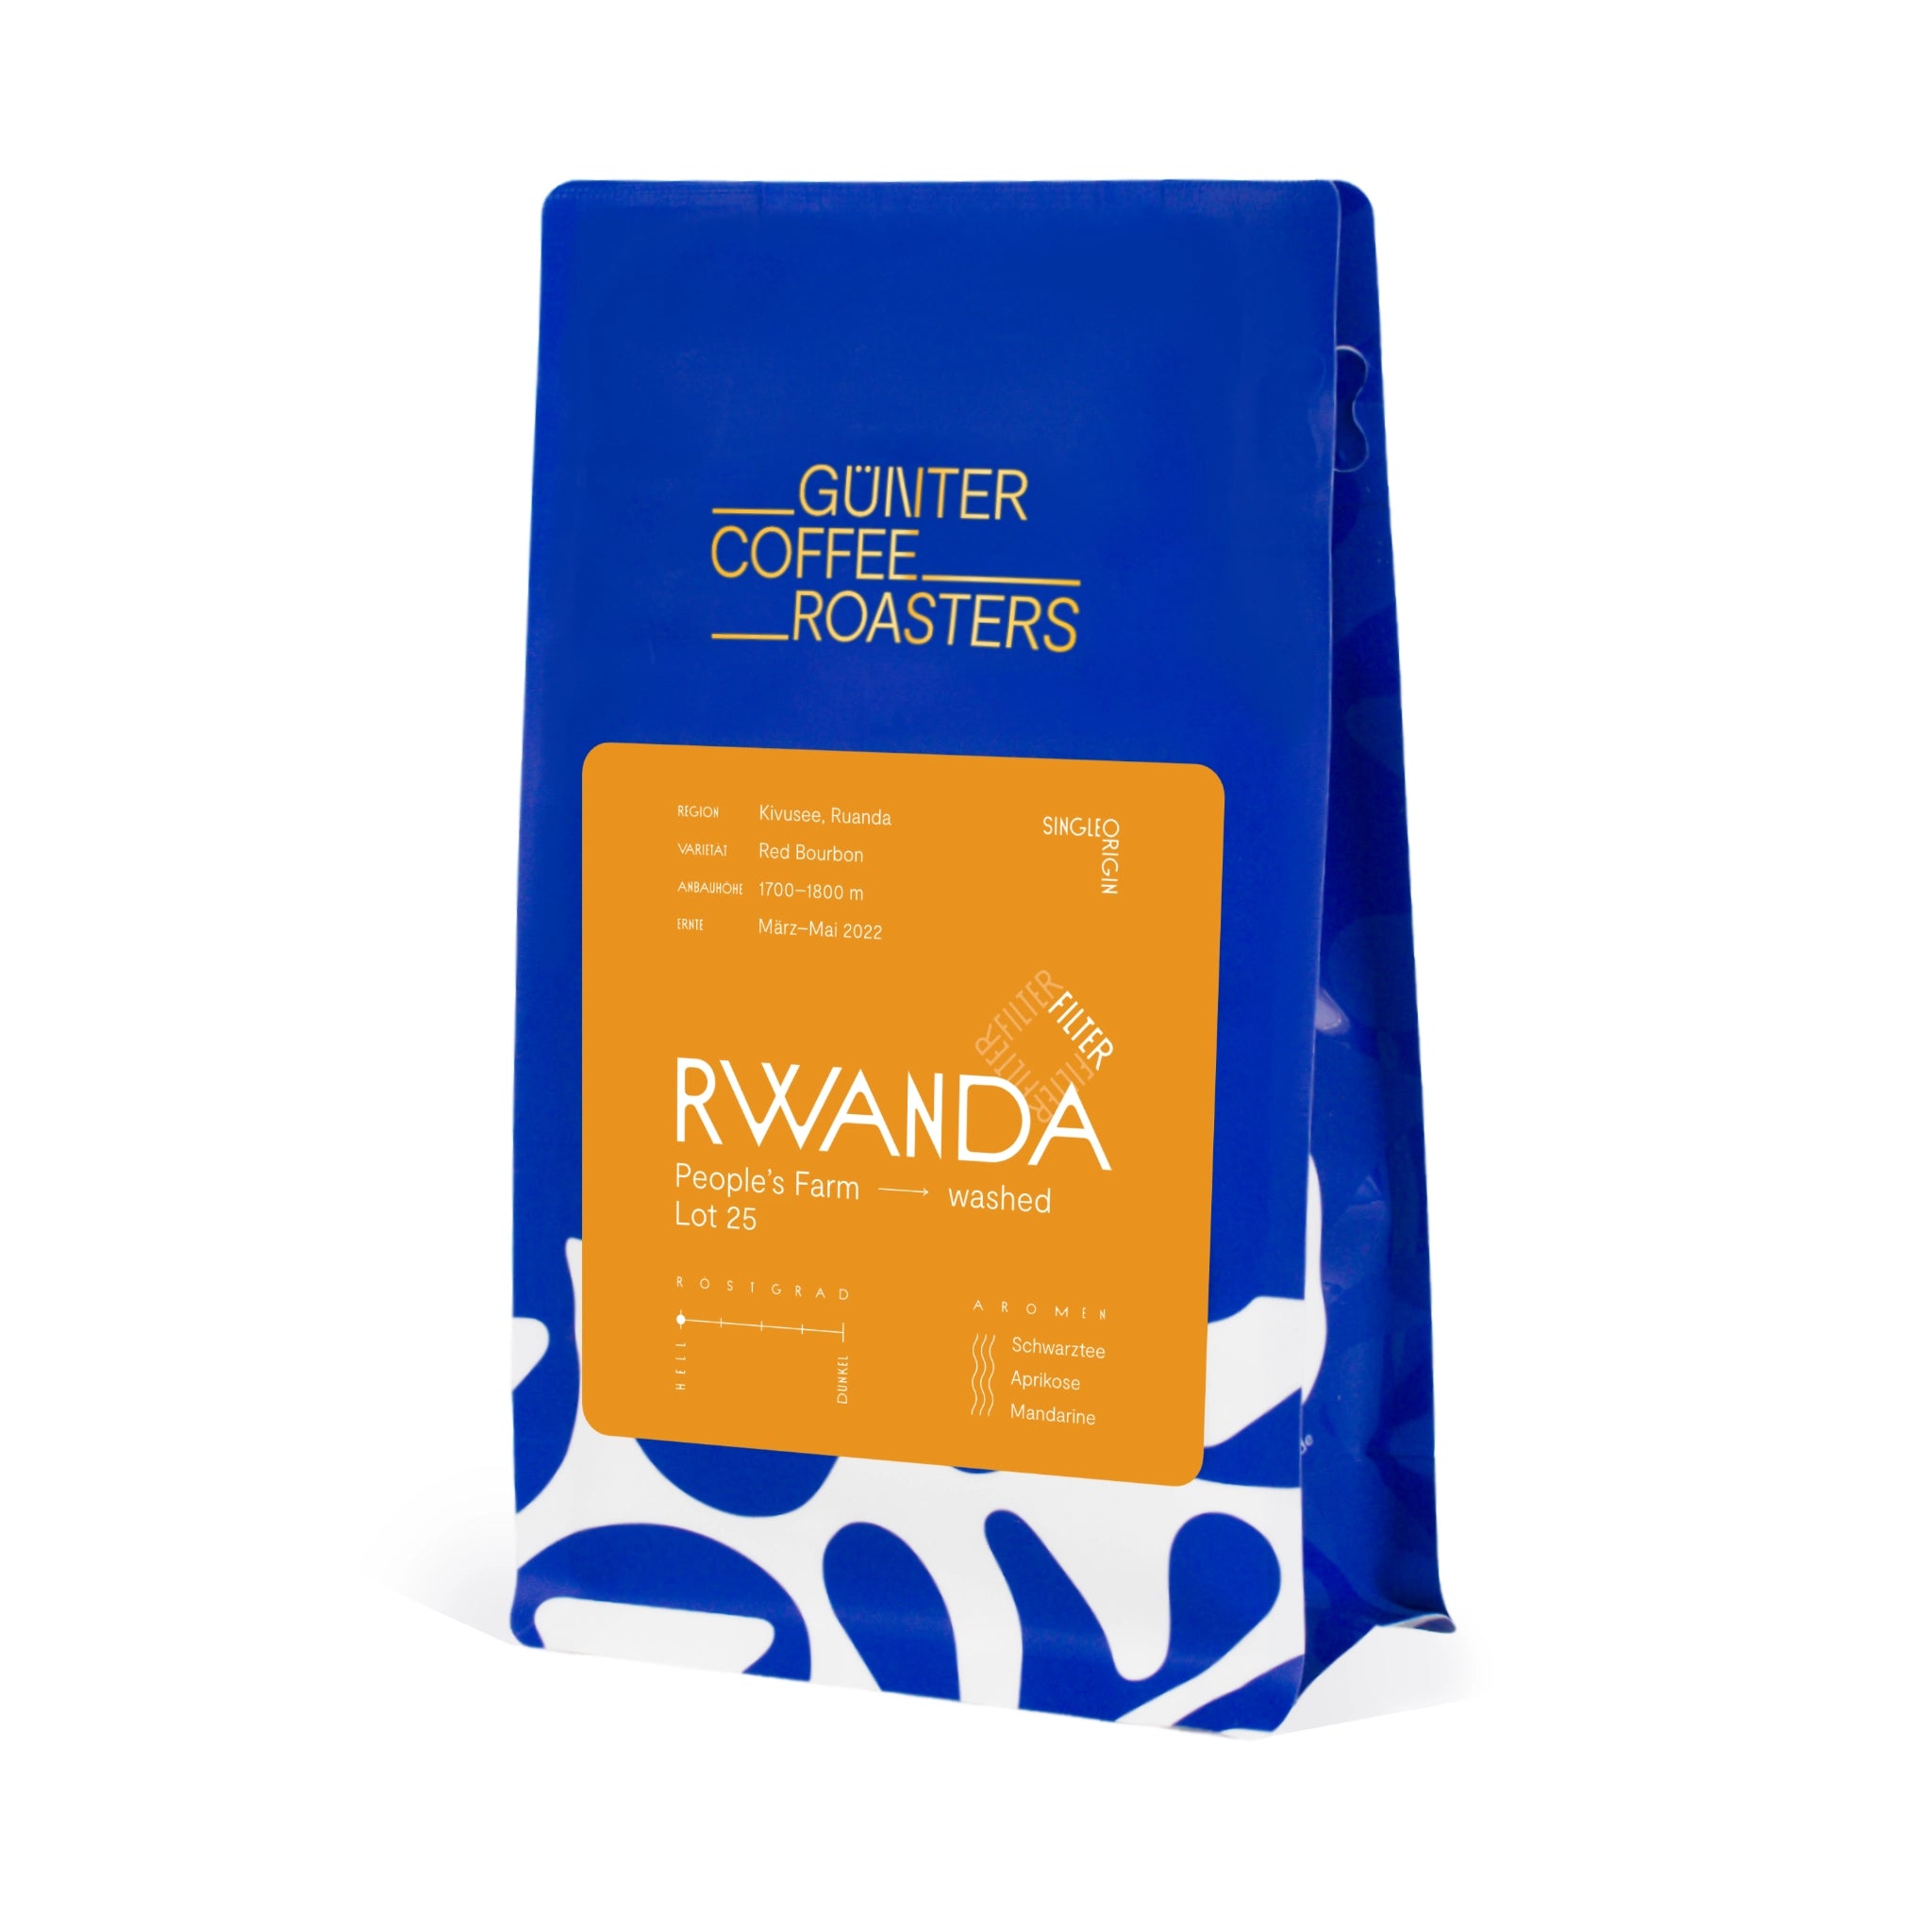 Produktverpackung Rwanda People's Farm Lot 25. Sortenreine Arabica-Kaffeebohnen für die Filterzubereitung. Noten von Schwarztee, Aprikose und Mandarine. Röstgrad 1 von 5.